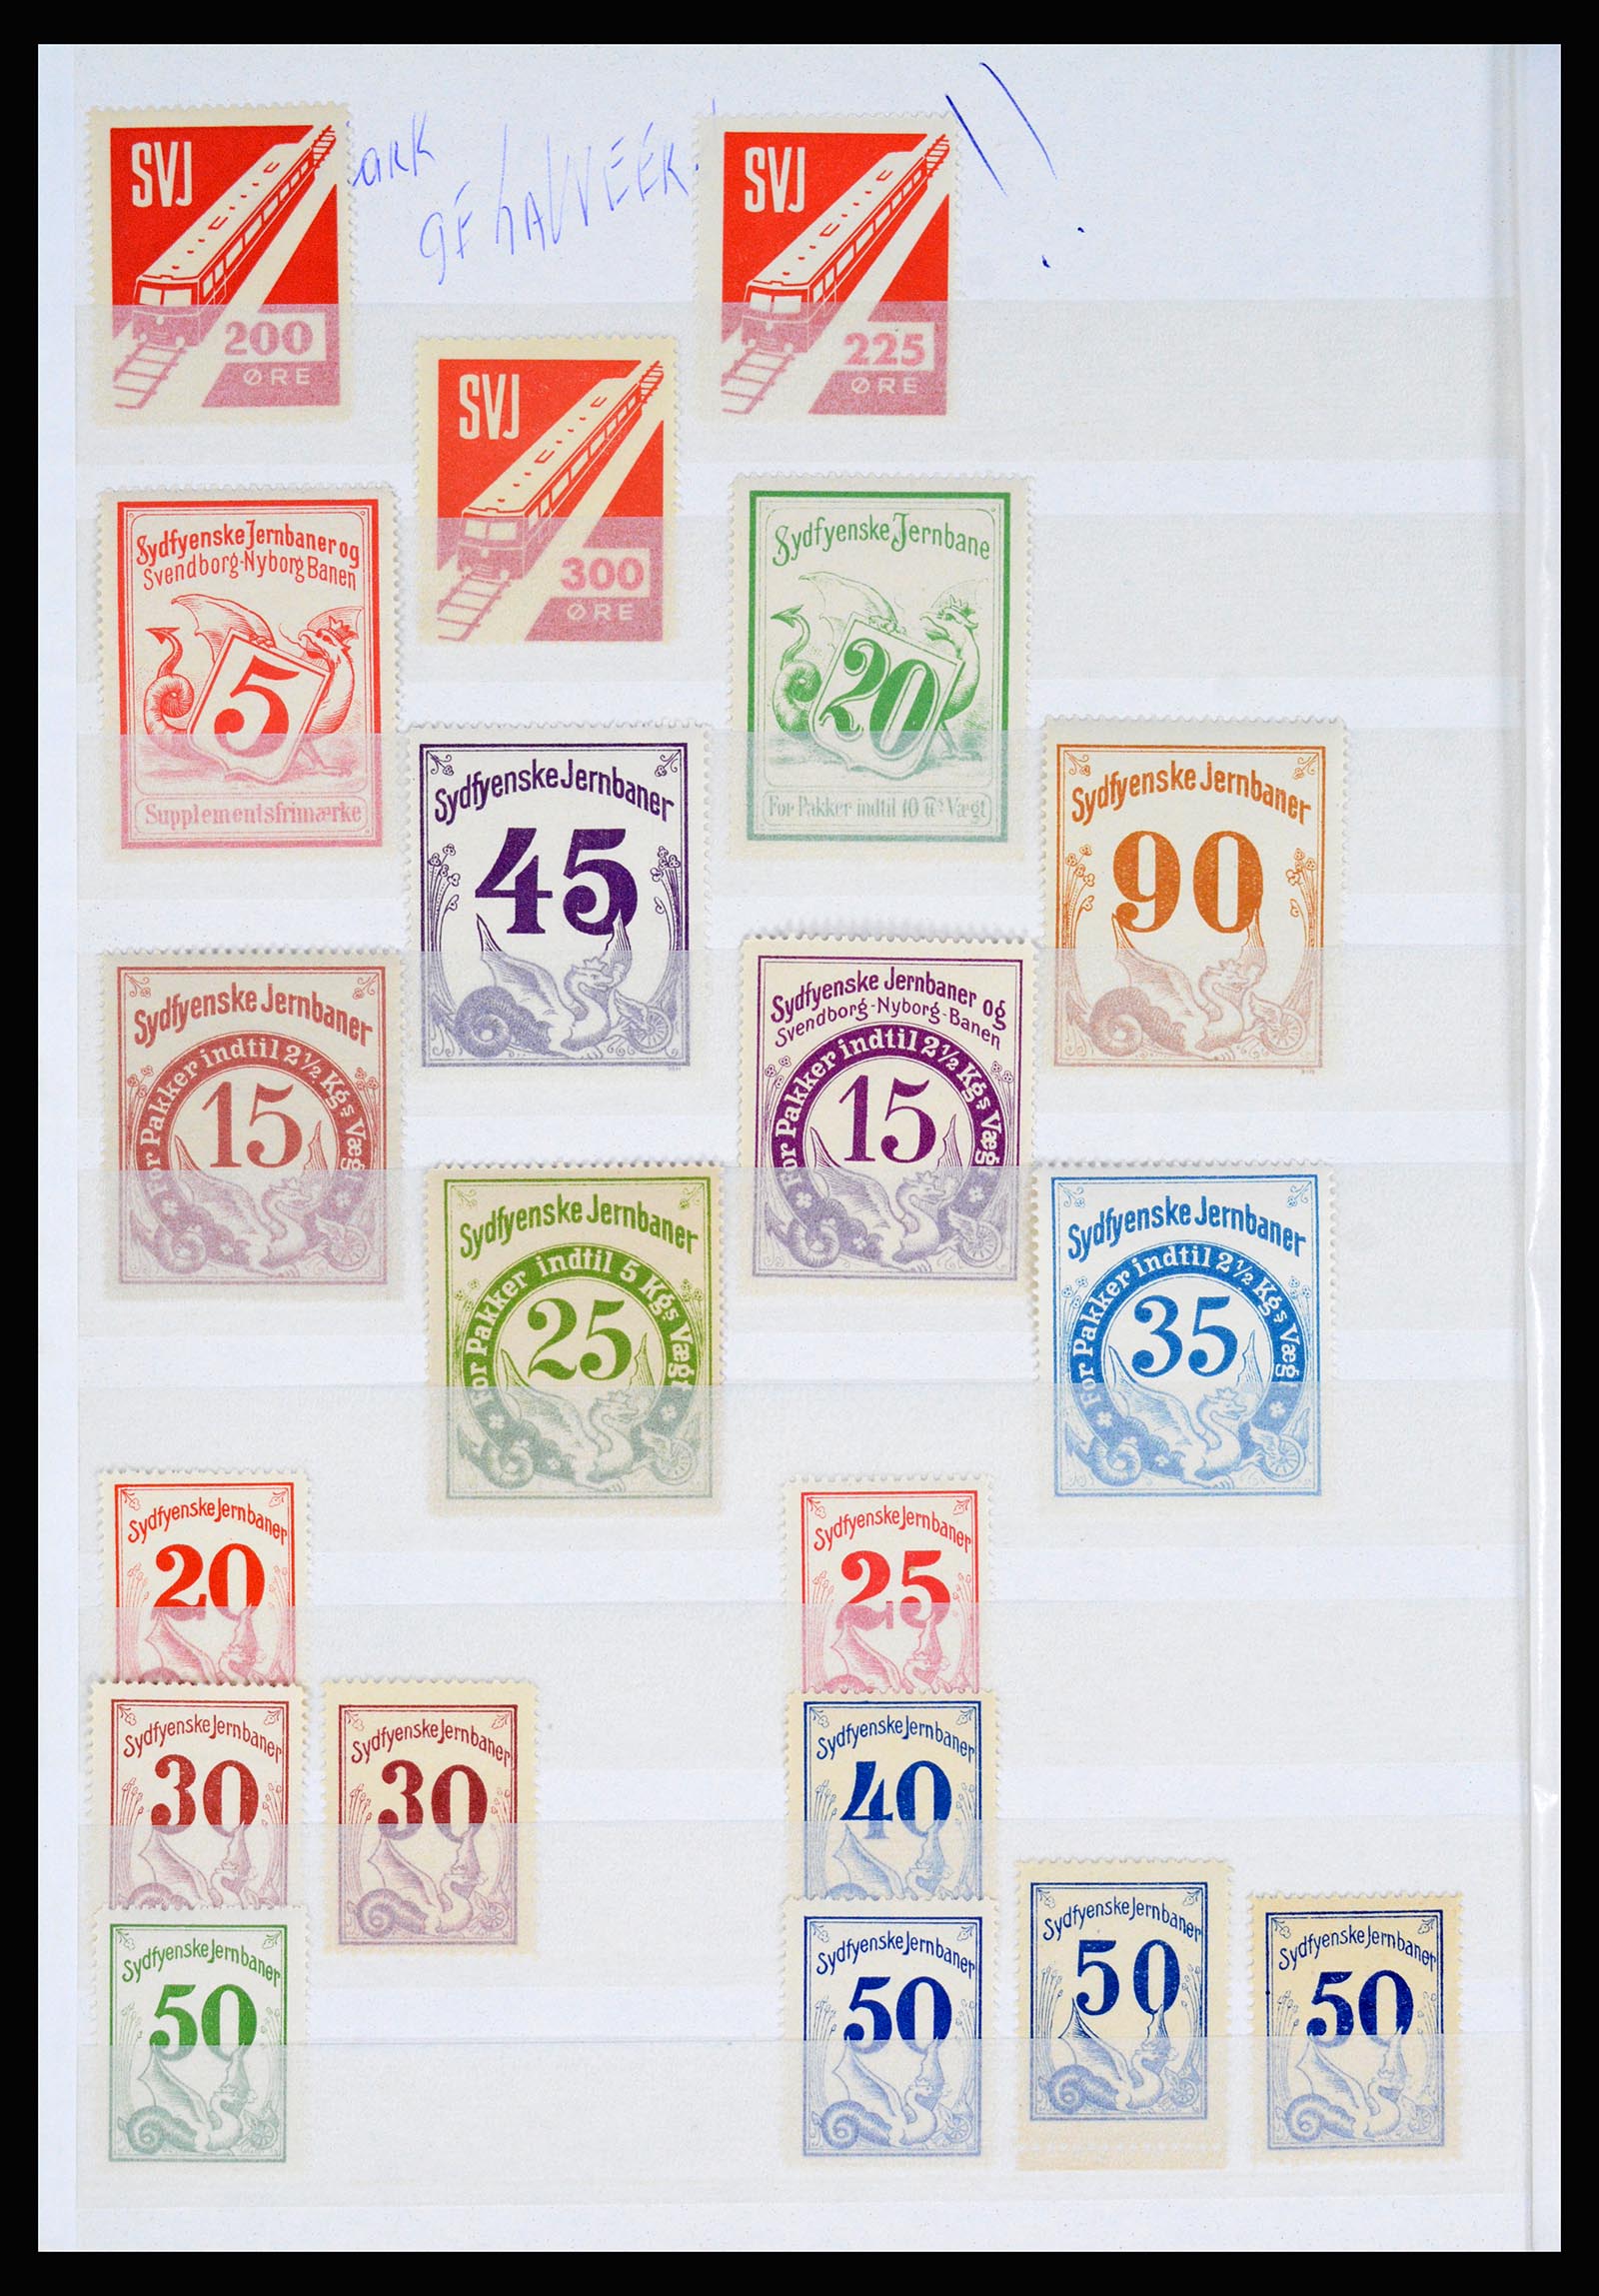 36982 129 - Postzegelverzameling 36982 Denemarken spoorwegzegels.